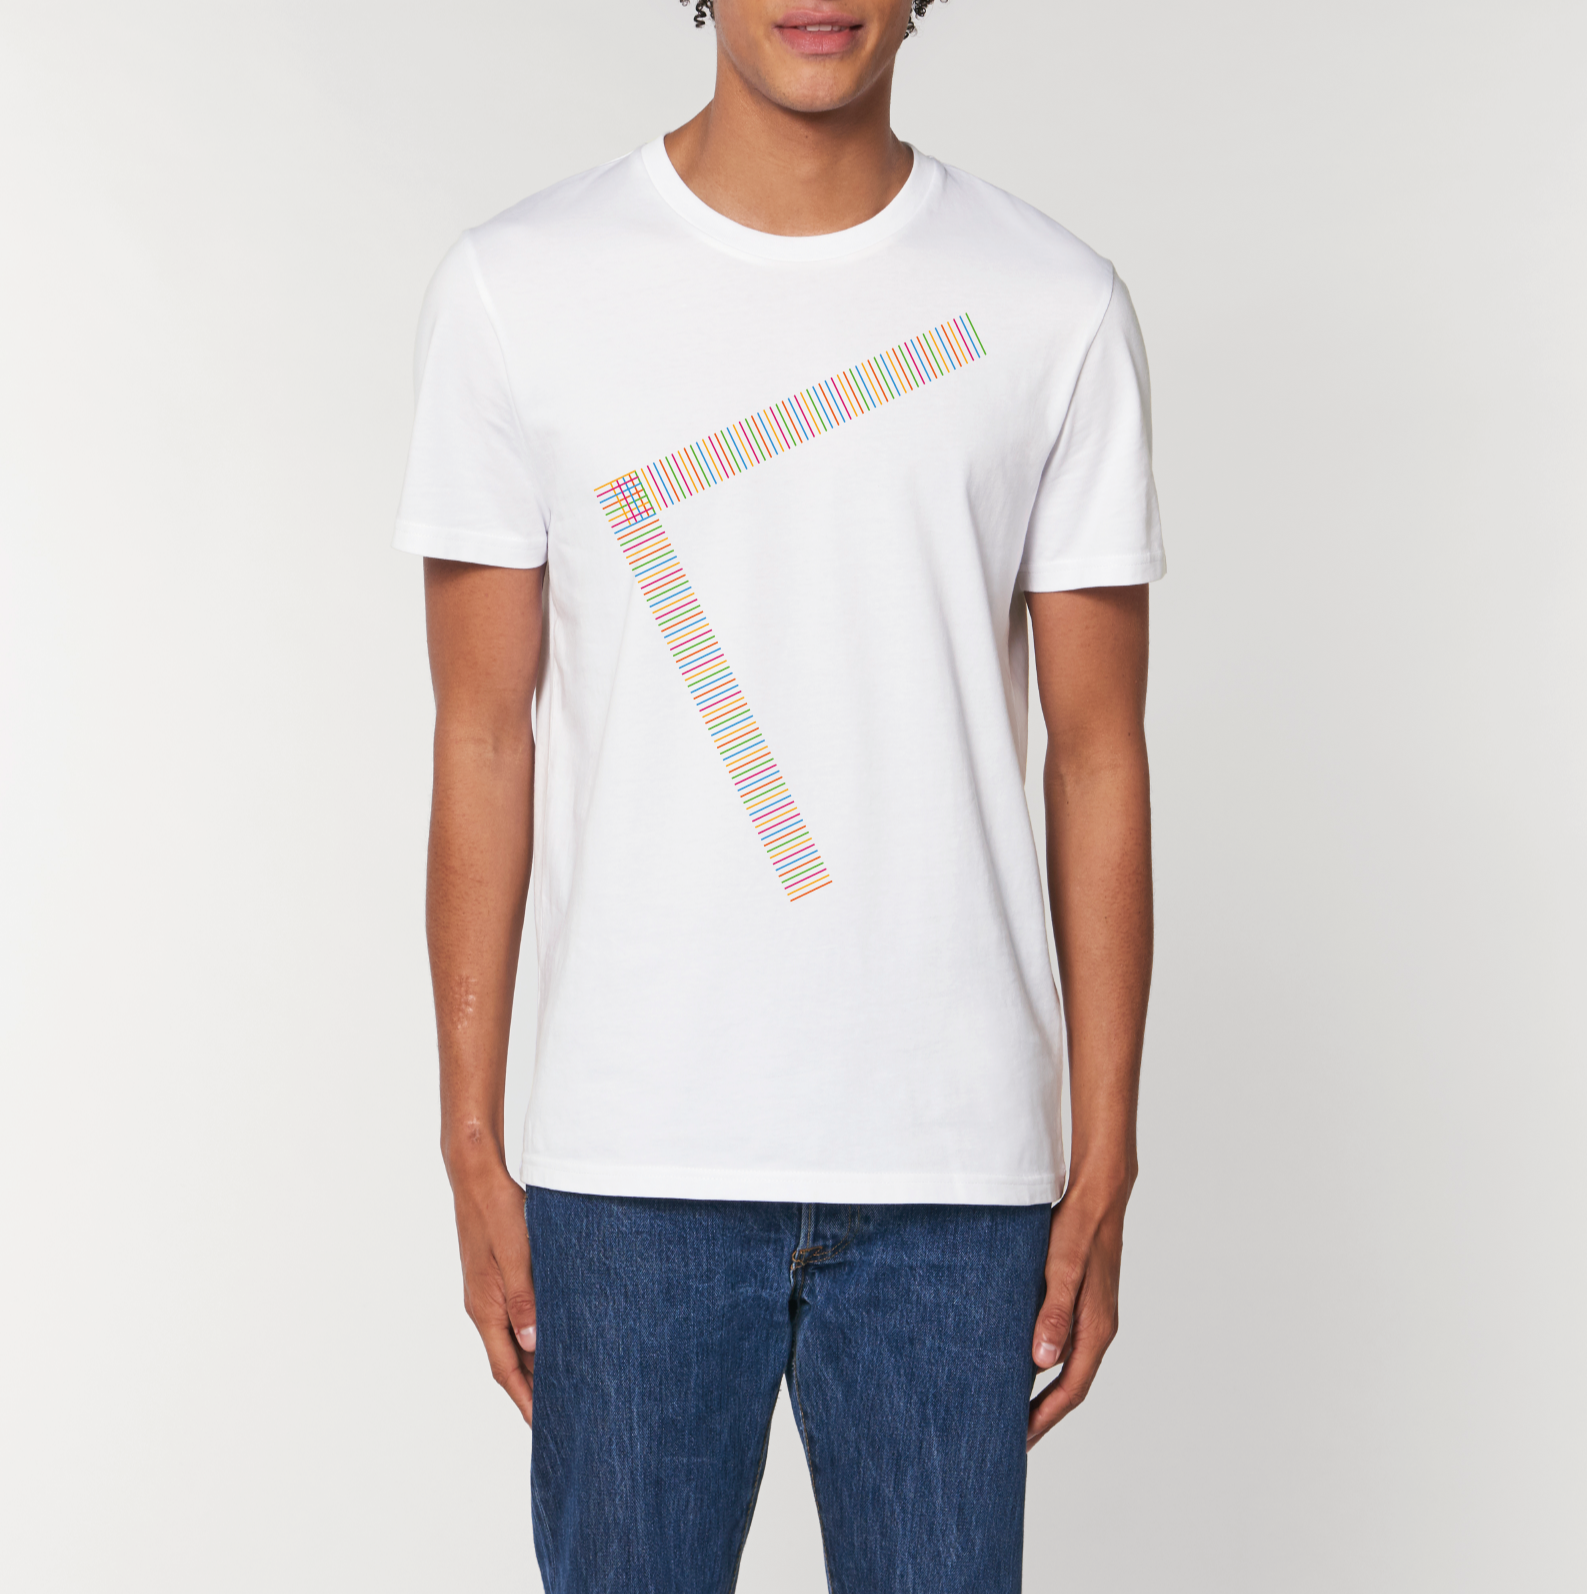 Boomerang White T-Shirt